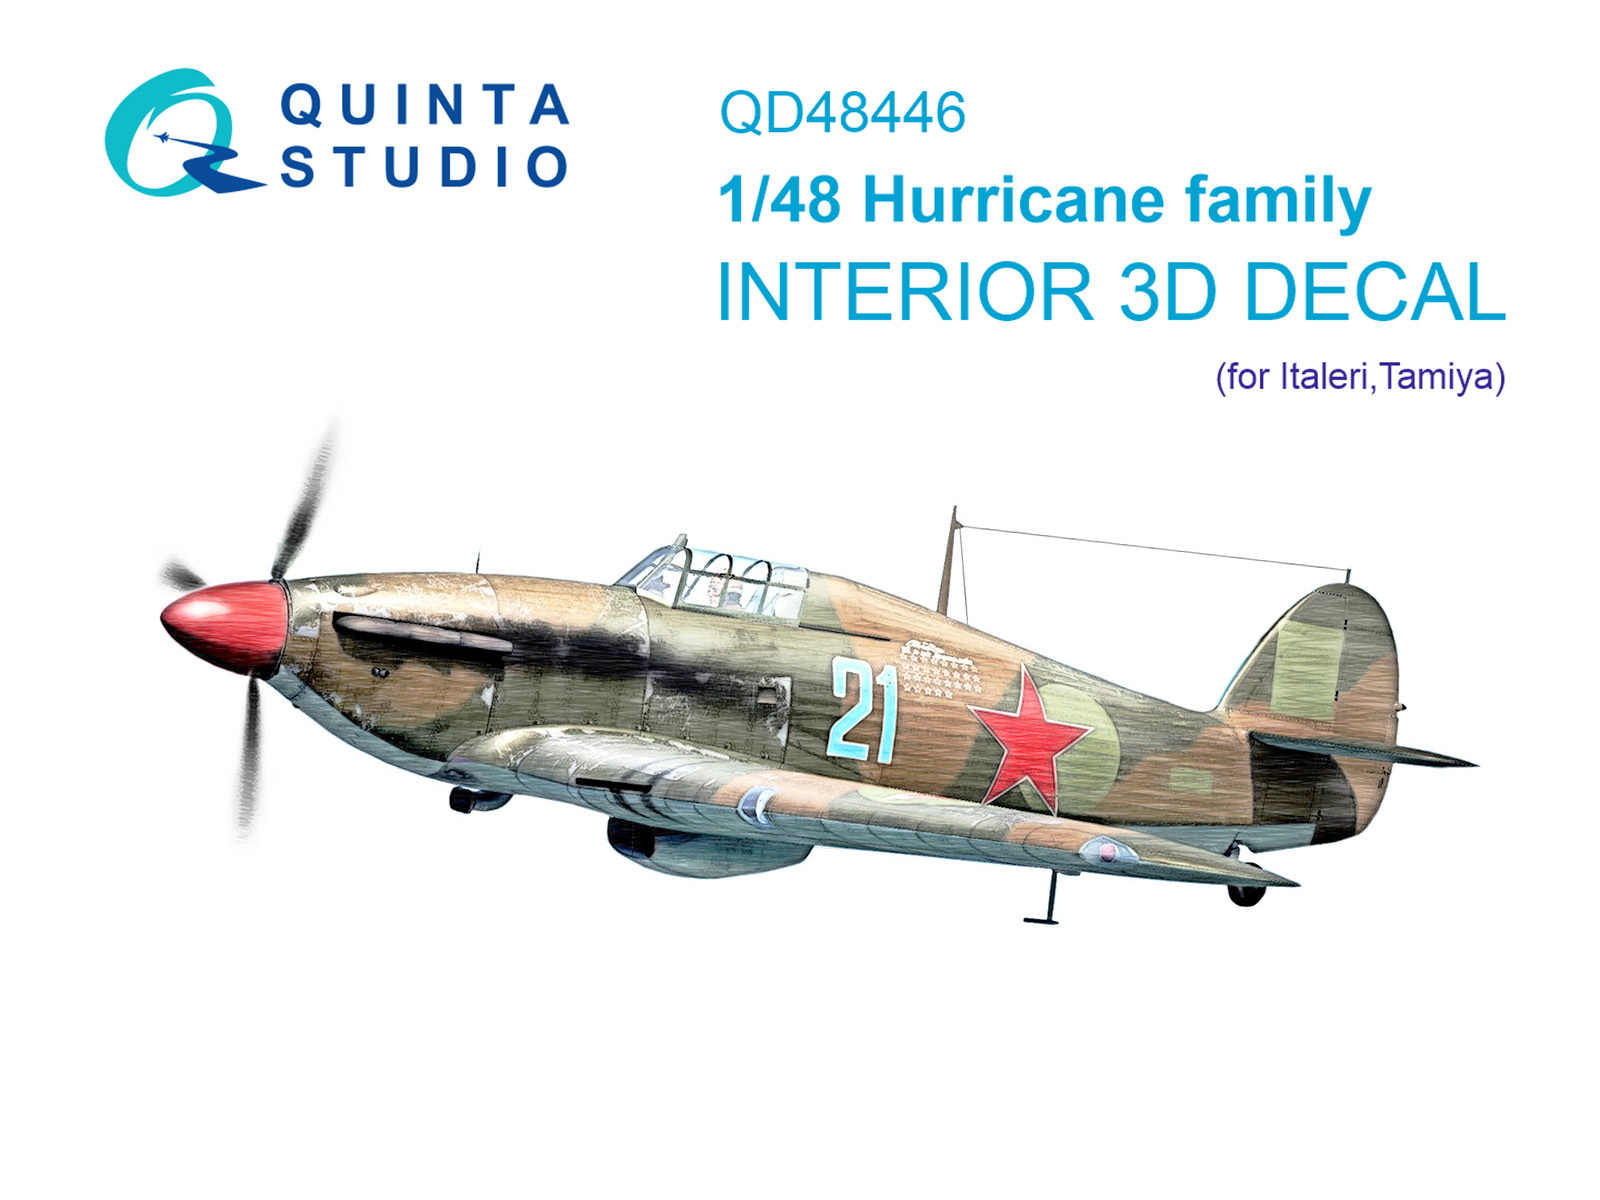 QD48446  декали  3D Декаль интерьера кабины для семейства Hurricane (Italeri/Tamiya)  (1:48)